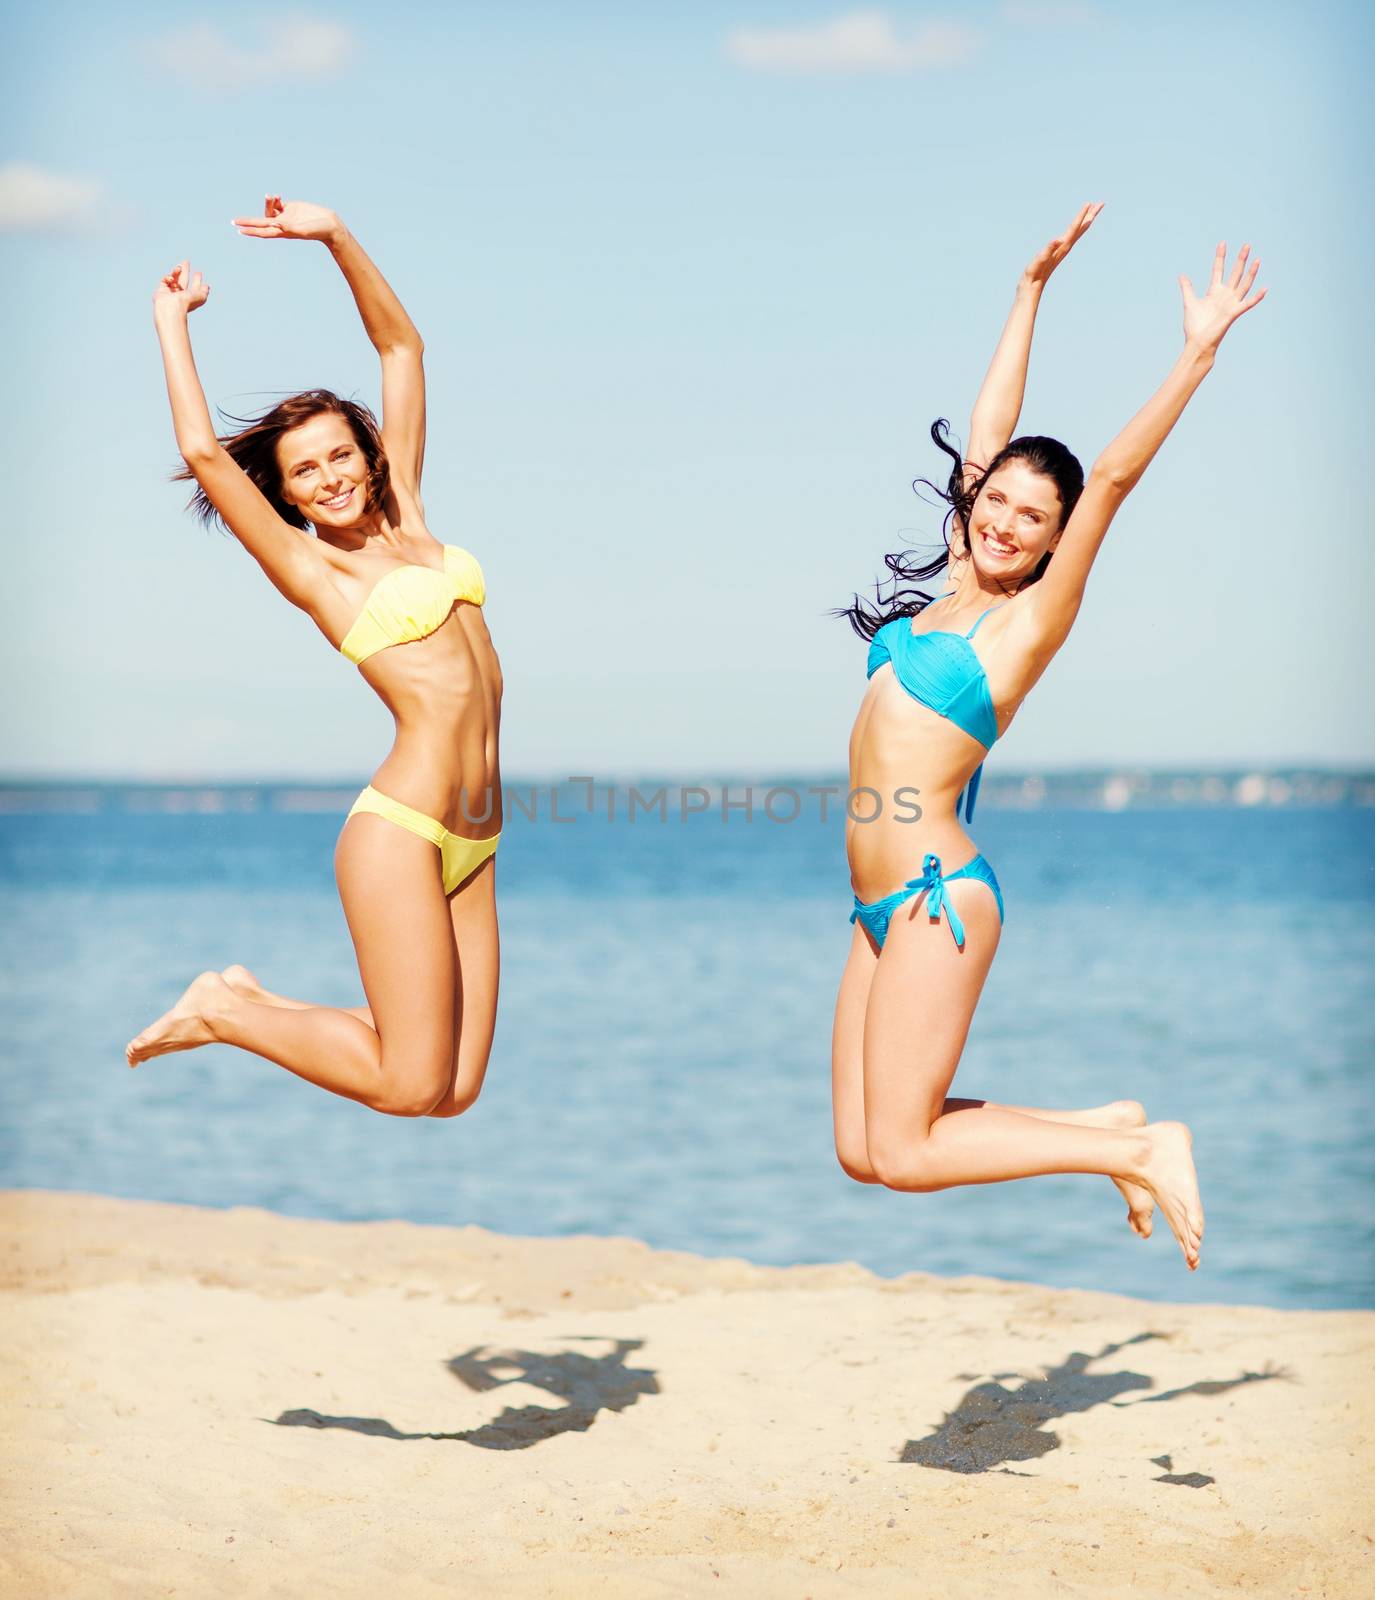 girls in bikini jumping on the beach by dolgachov